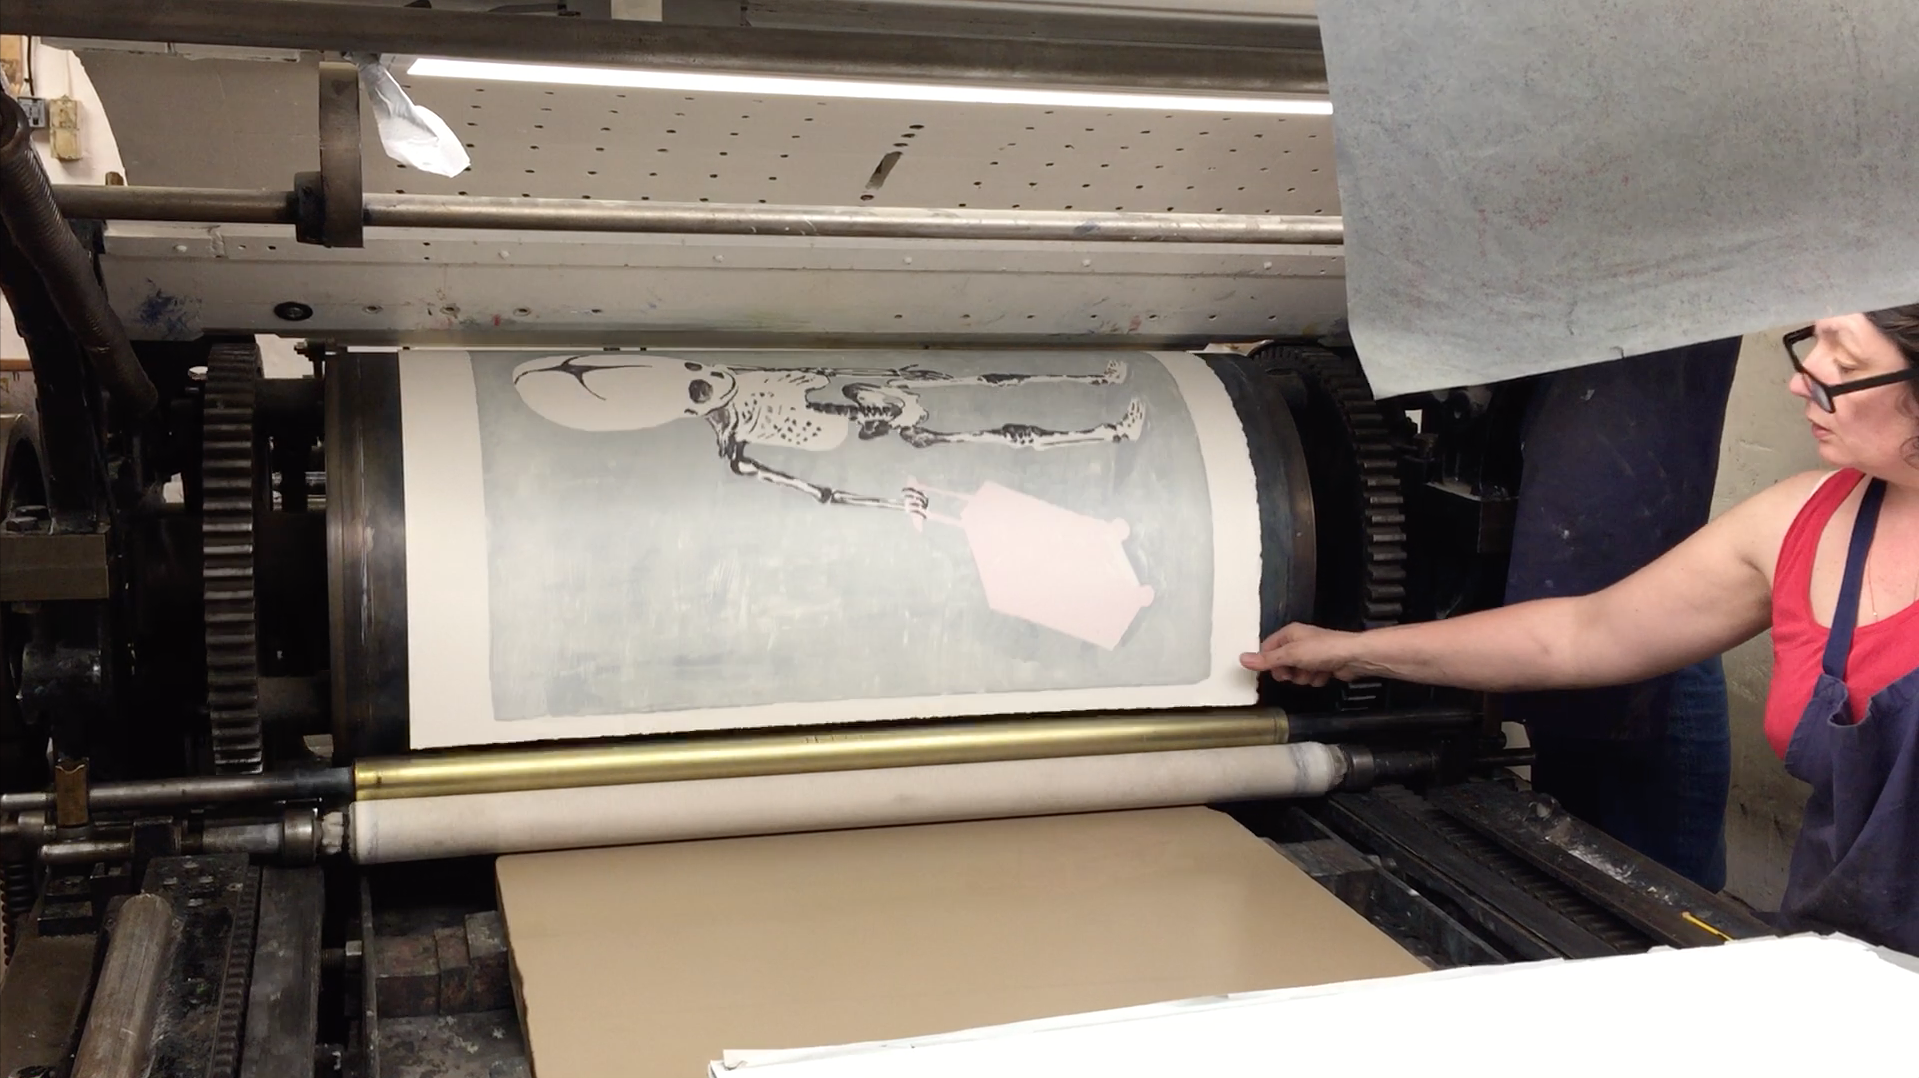 Video - Impression de la 6e couleur de la lithographie No Home de James Rielly